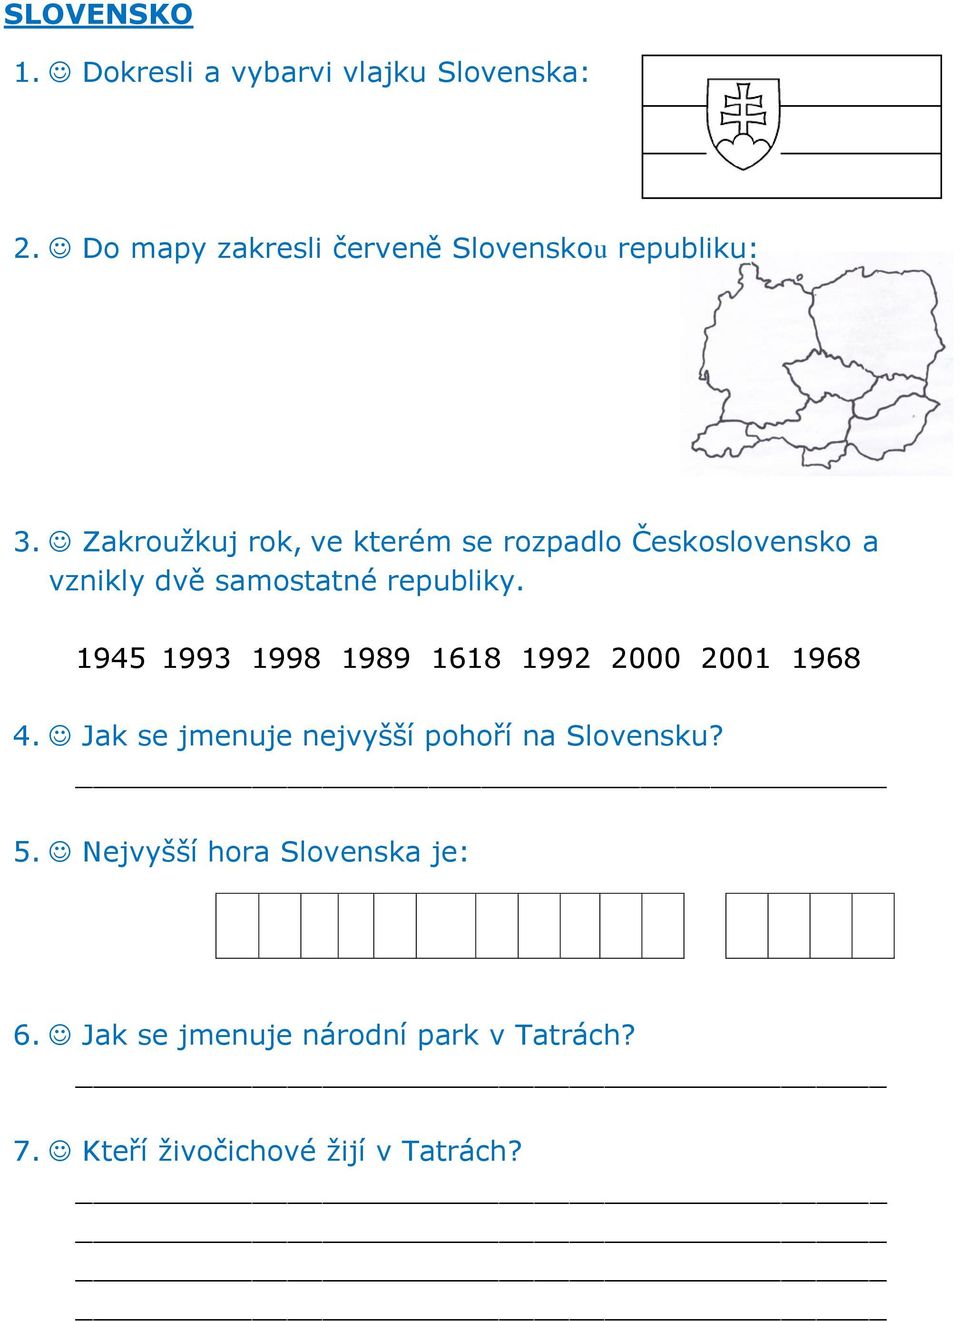 Zakroužkuj rok, ve kterém se rozpadlo Československo a vznikly dvě samostatné republiky.